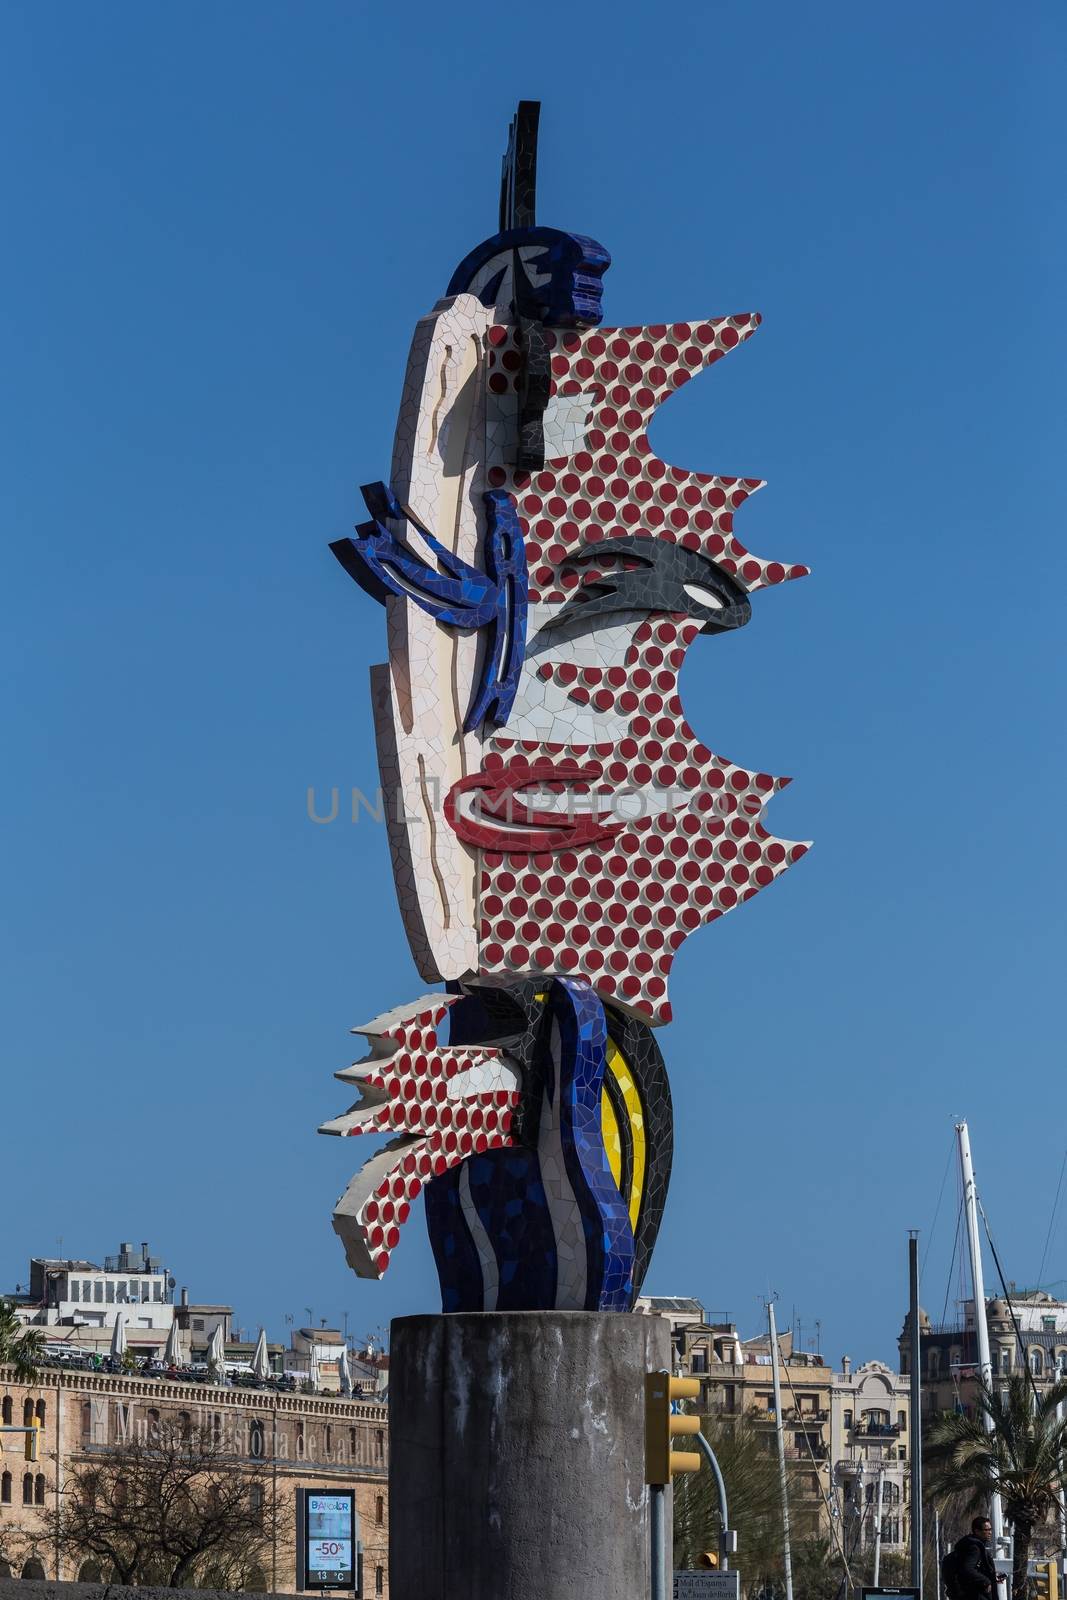 Pop art sculpture "El Cap de Barcelona" by Digoarpi